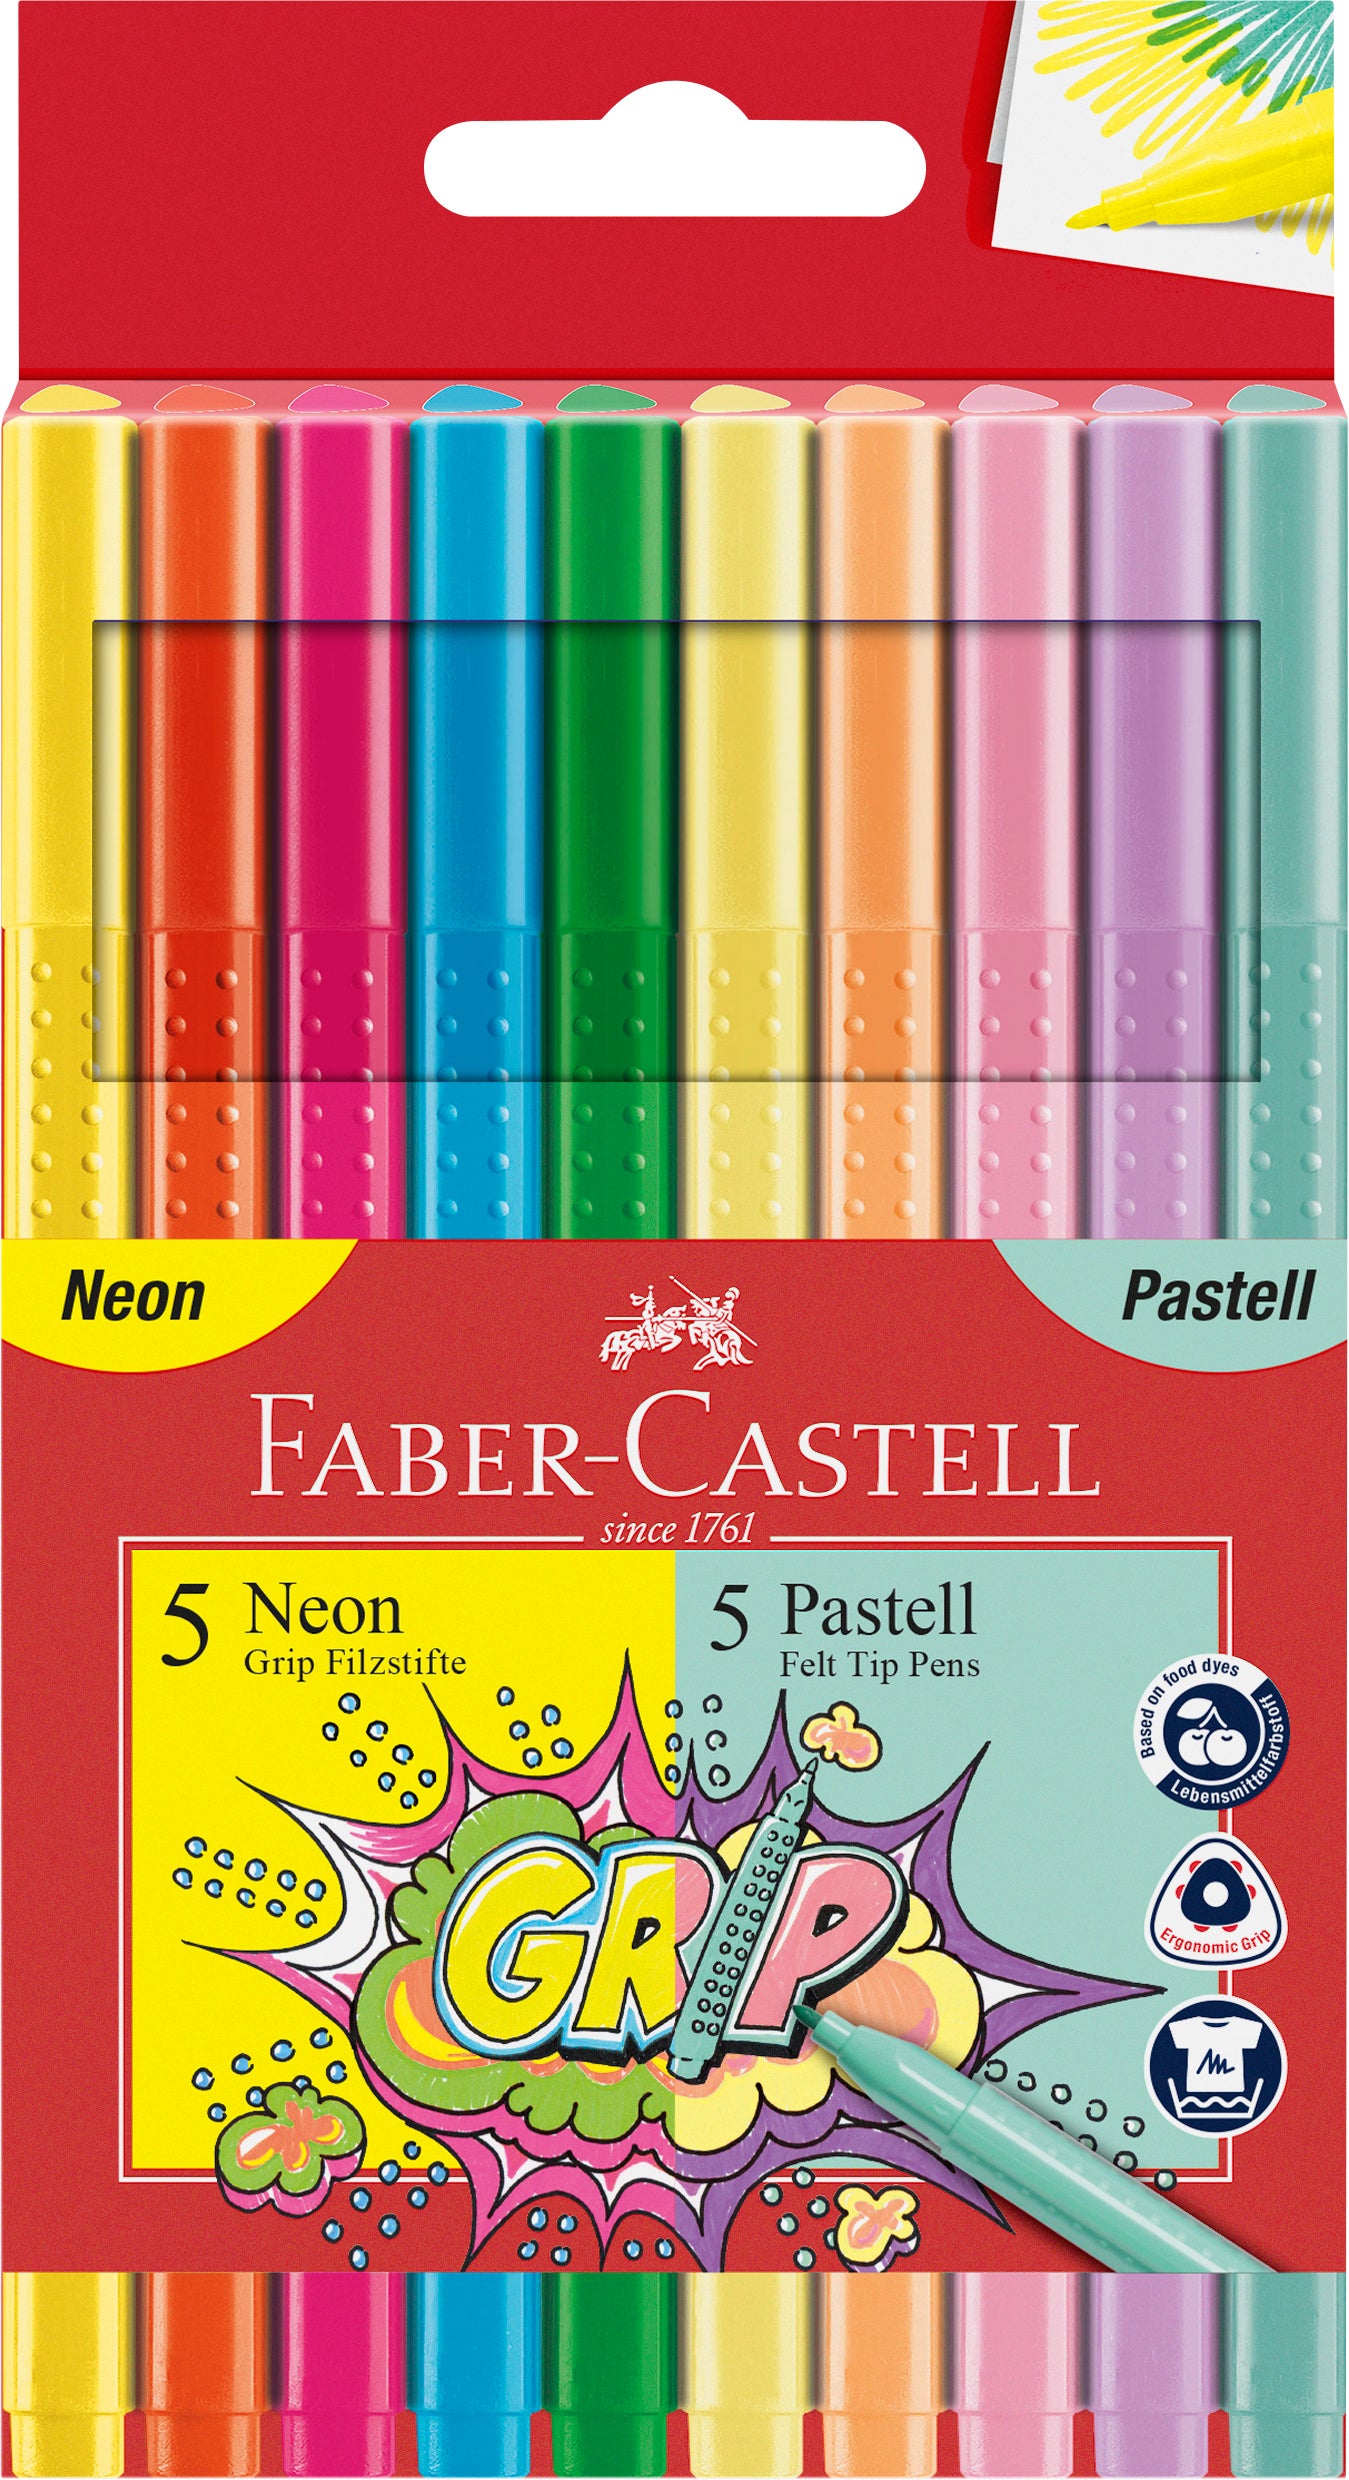 Faber-Castell tuscher, 10 stk pastel & neon